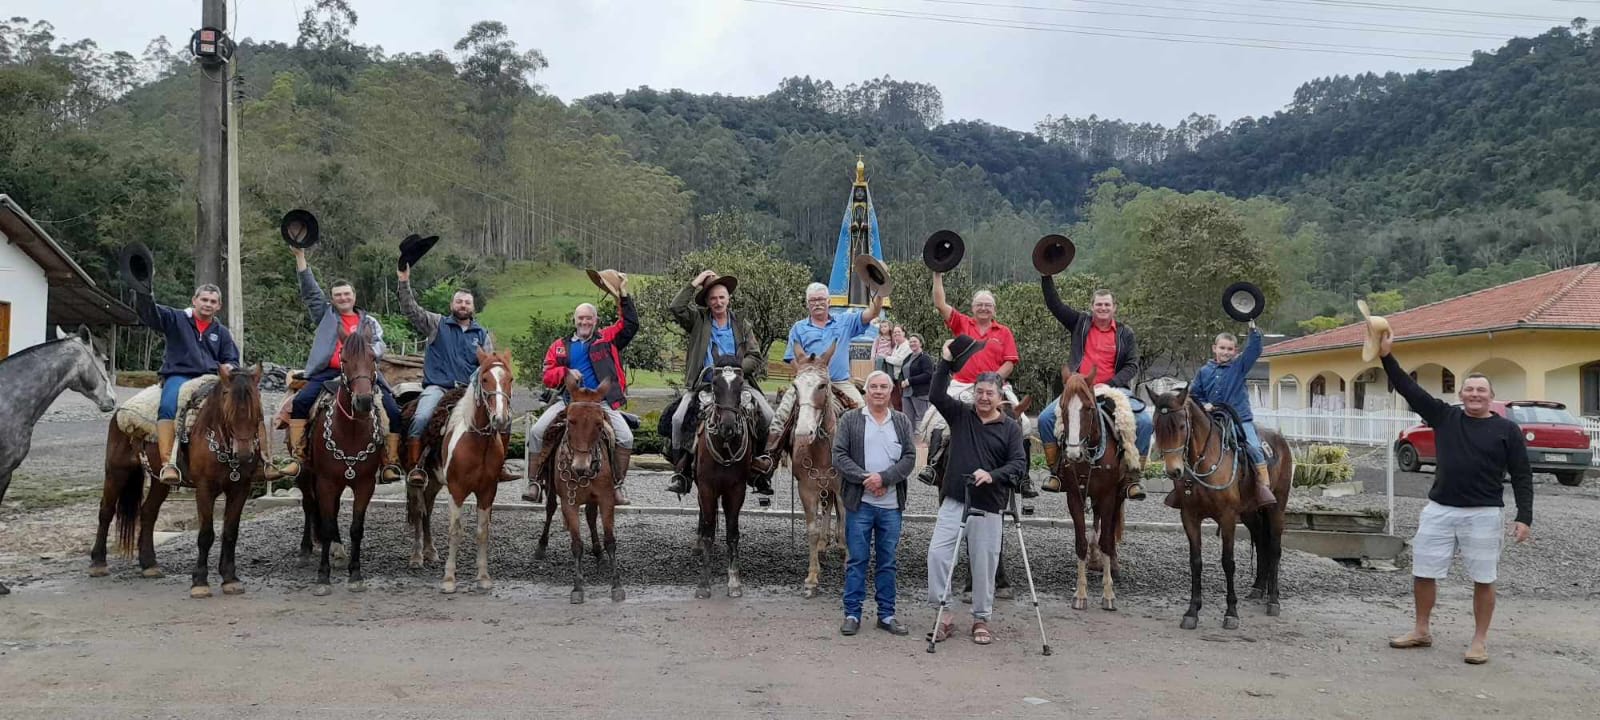 Cavaleiros de Taió e Vitor Meireles partem em uma jornada de mais de 300 quilômetros